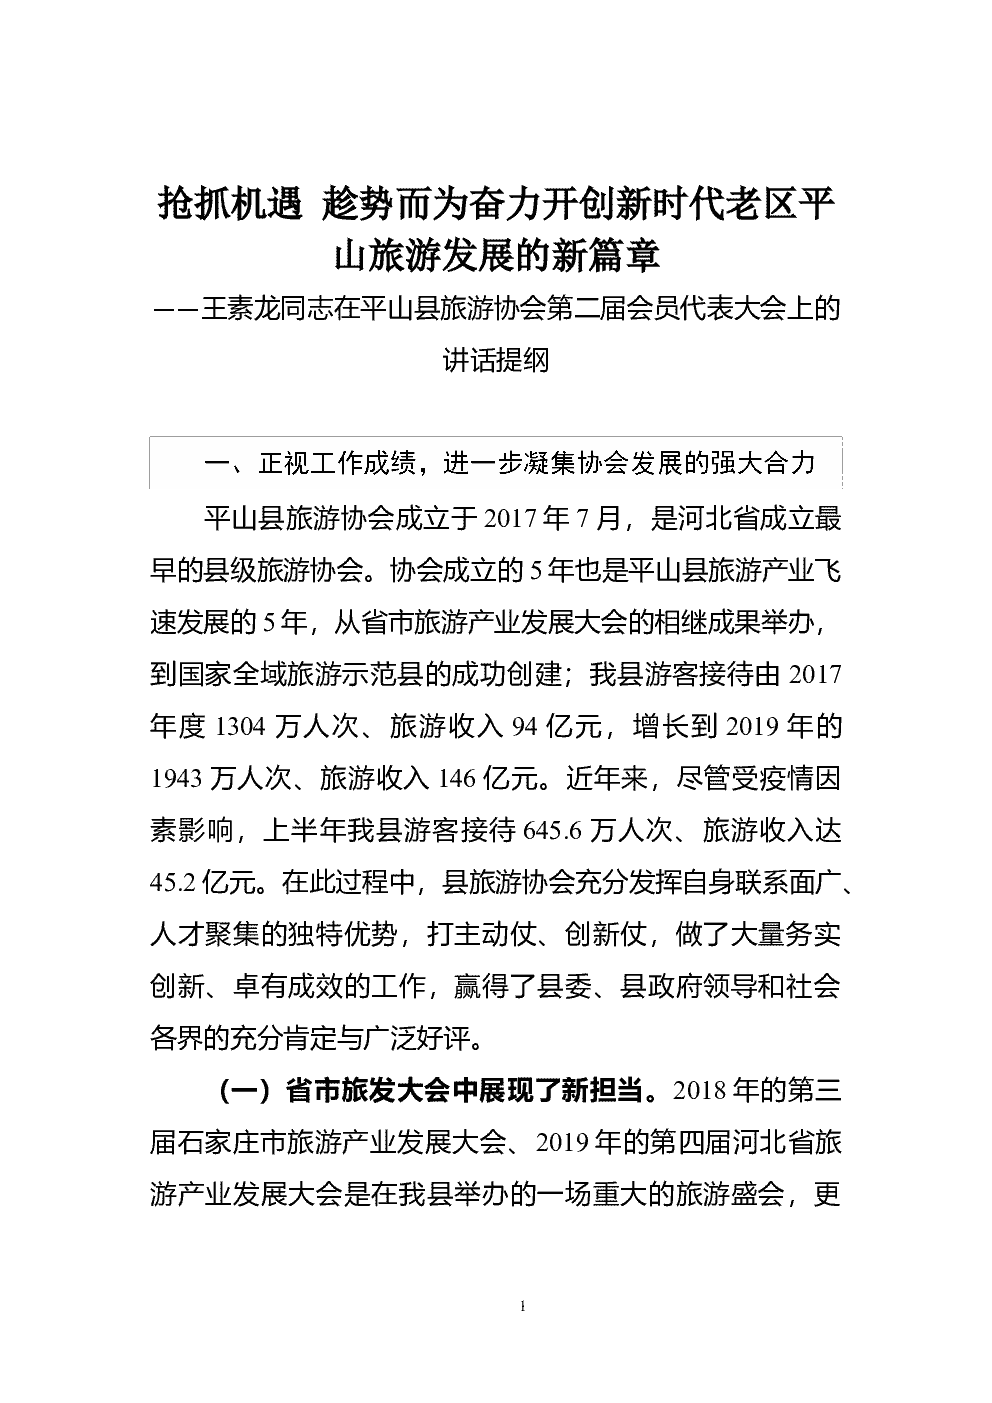 王素龙同志在平山县旅游协会第二届会员代表大会上的讲话提纲 第 1 页